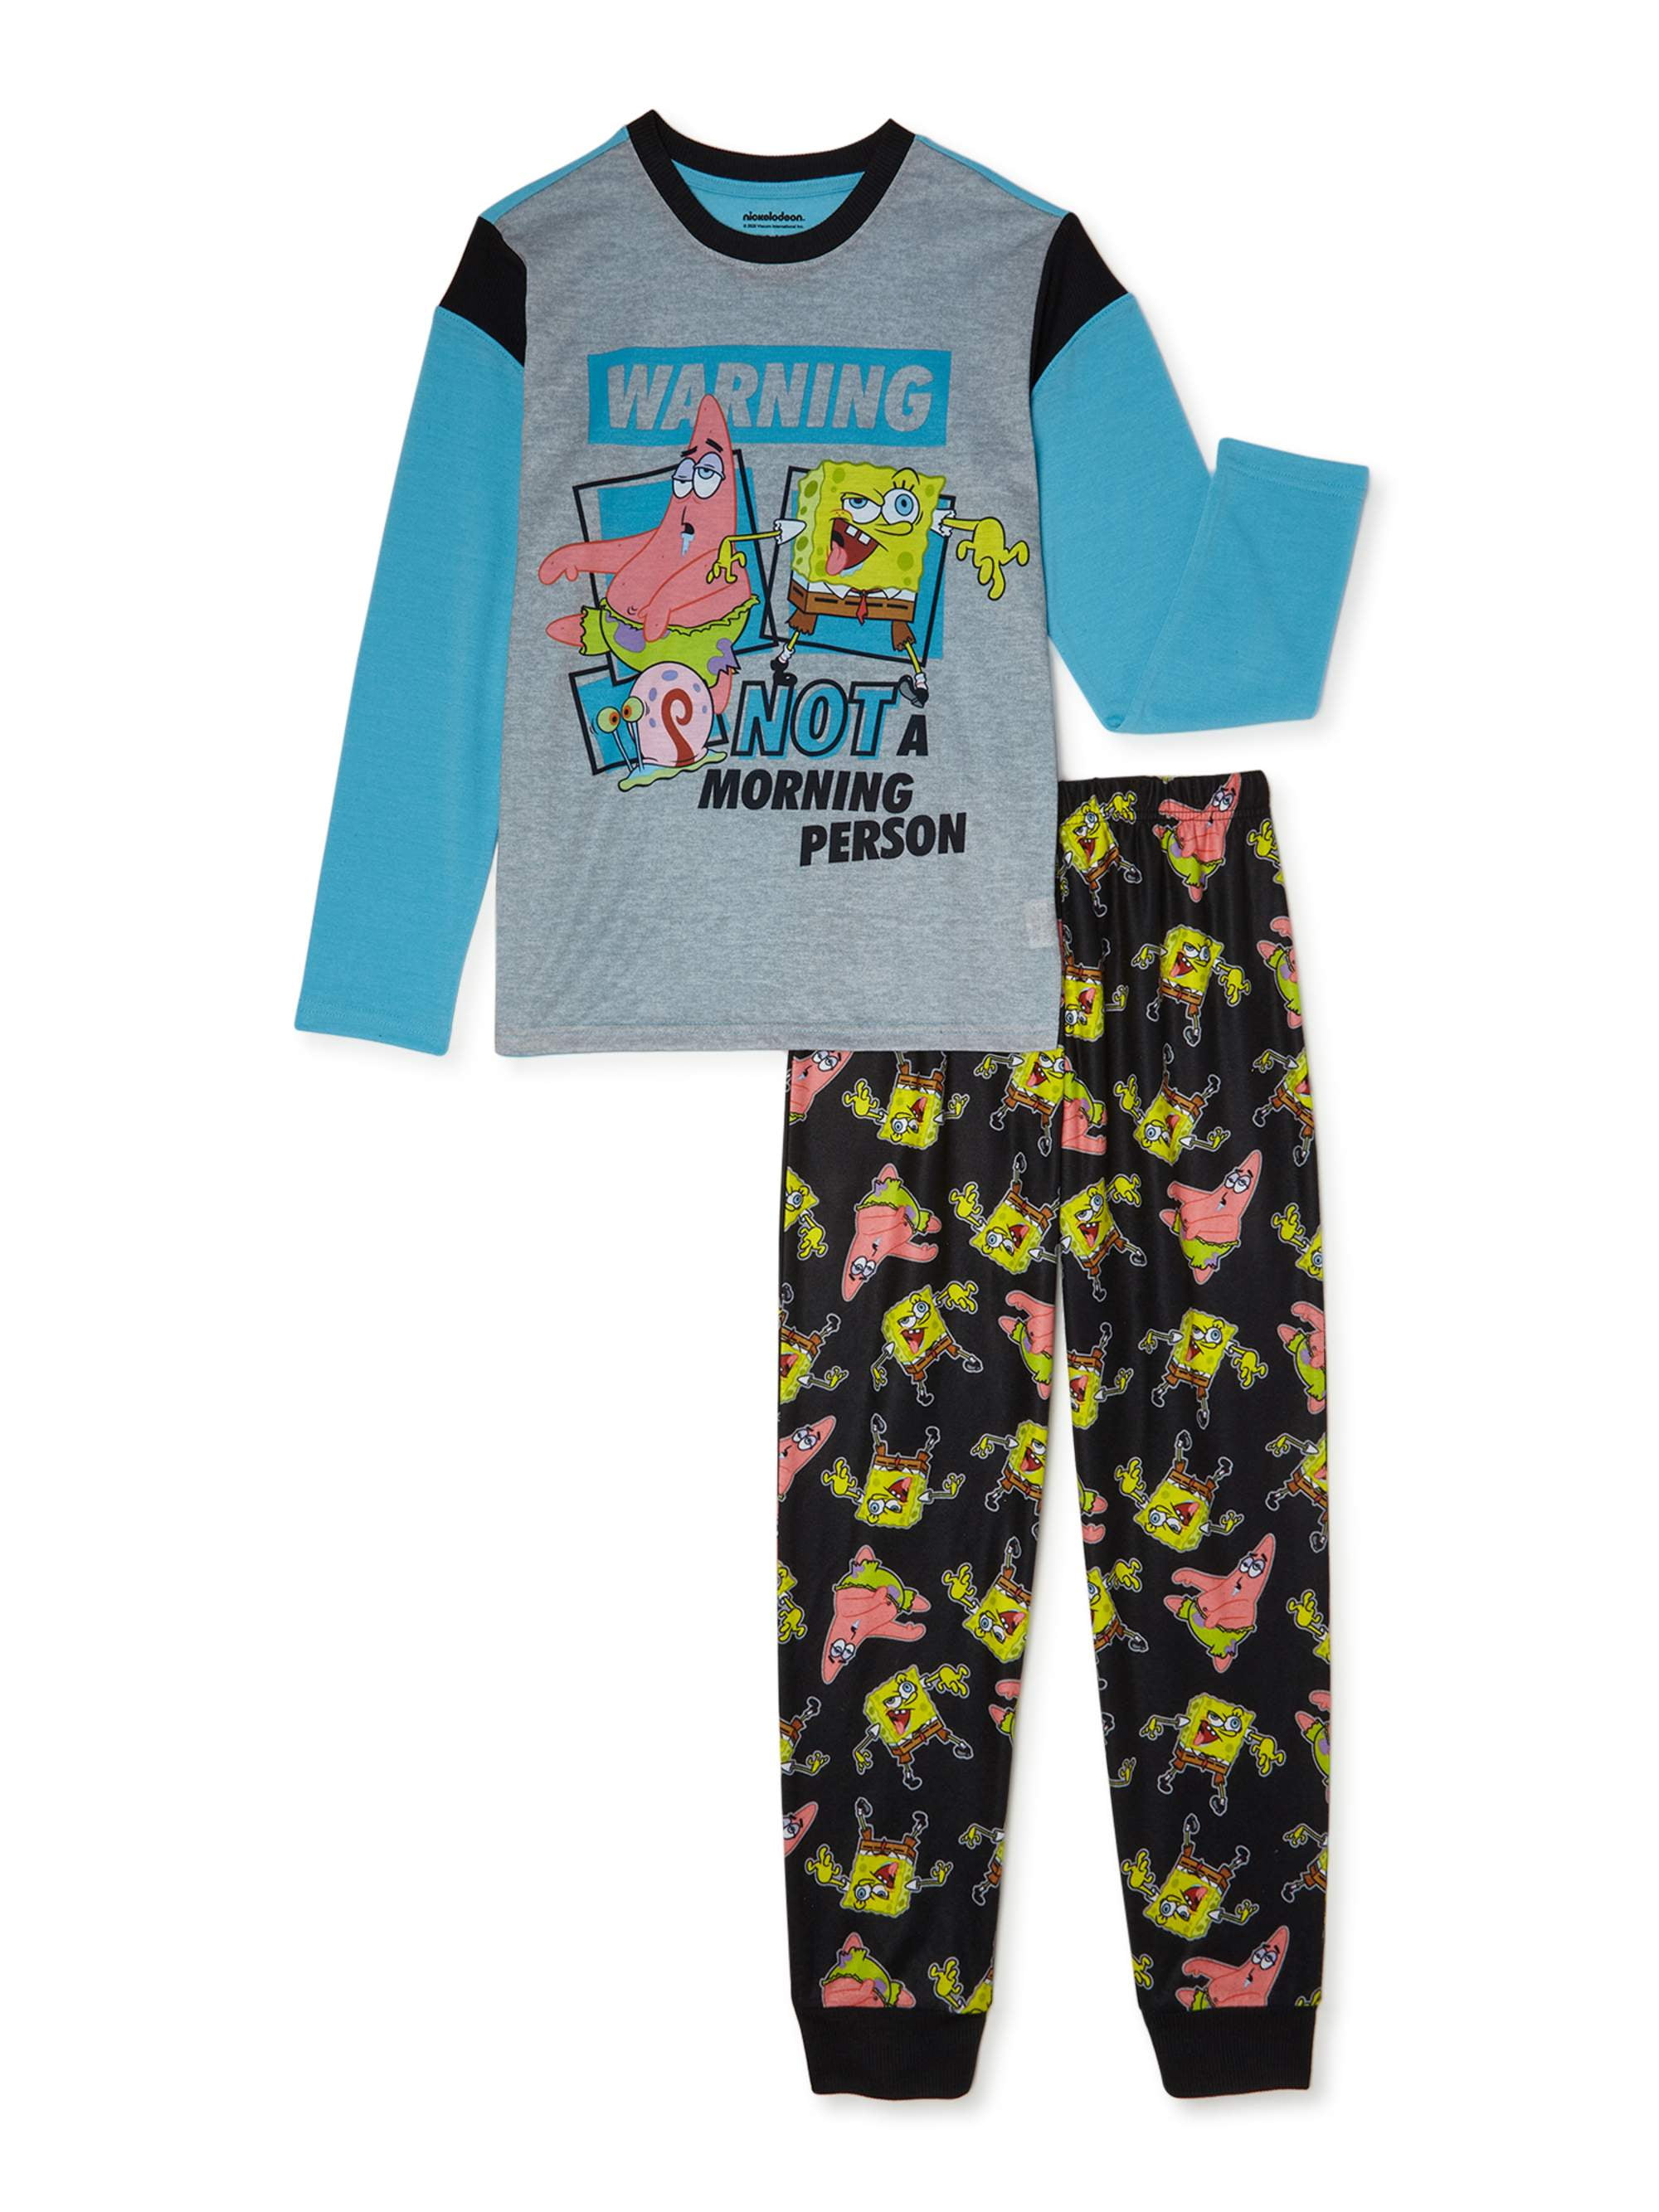 Spongebob Squarepants Pajamas Sleepwear 2pc Set Boys 4 6 8 10 12 Stay Weird New